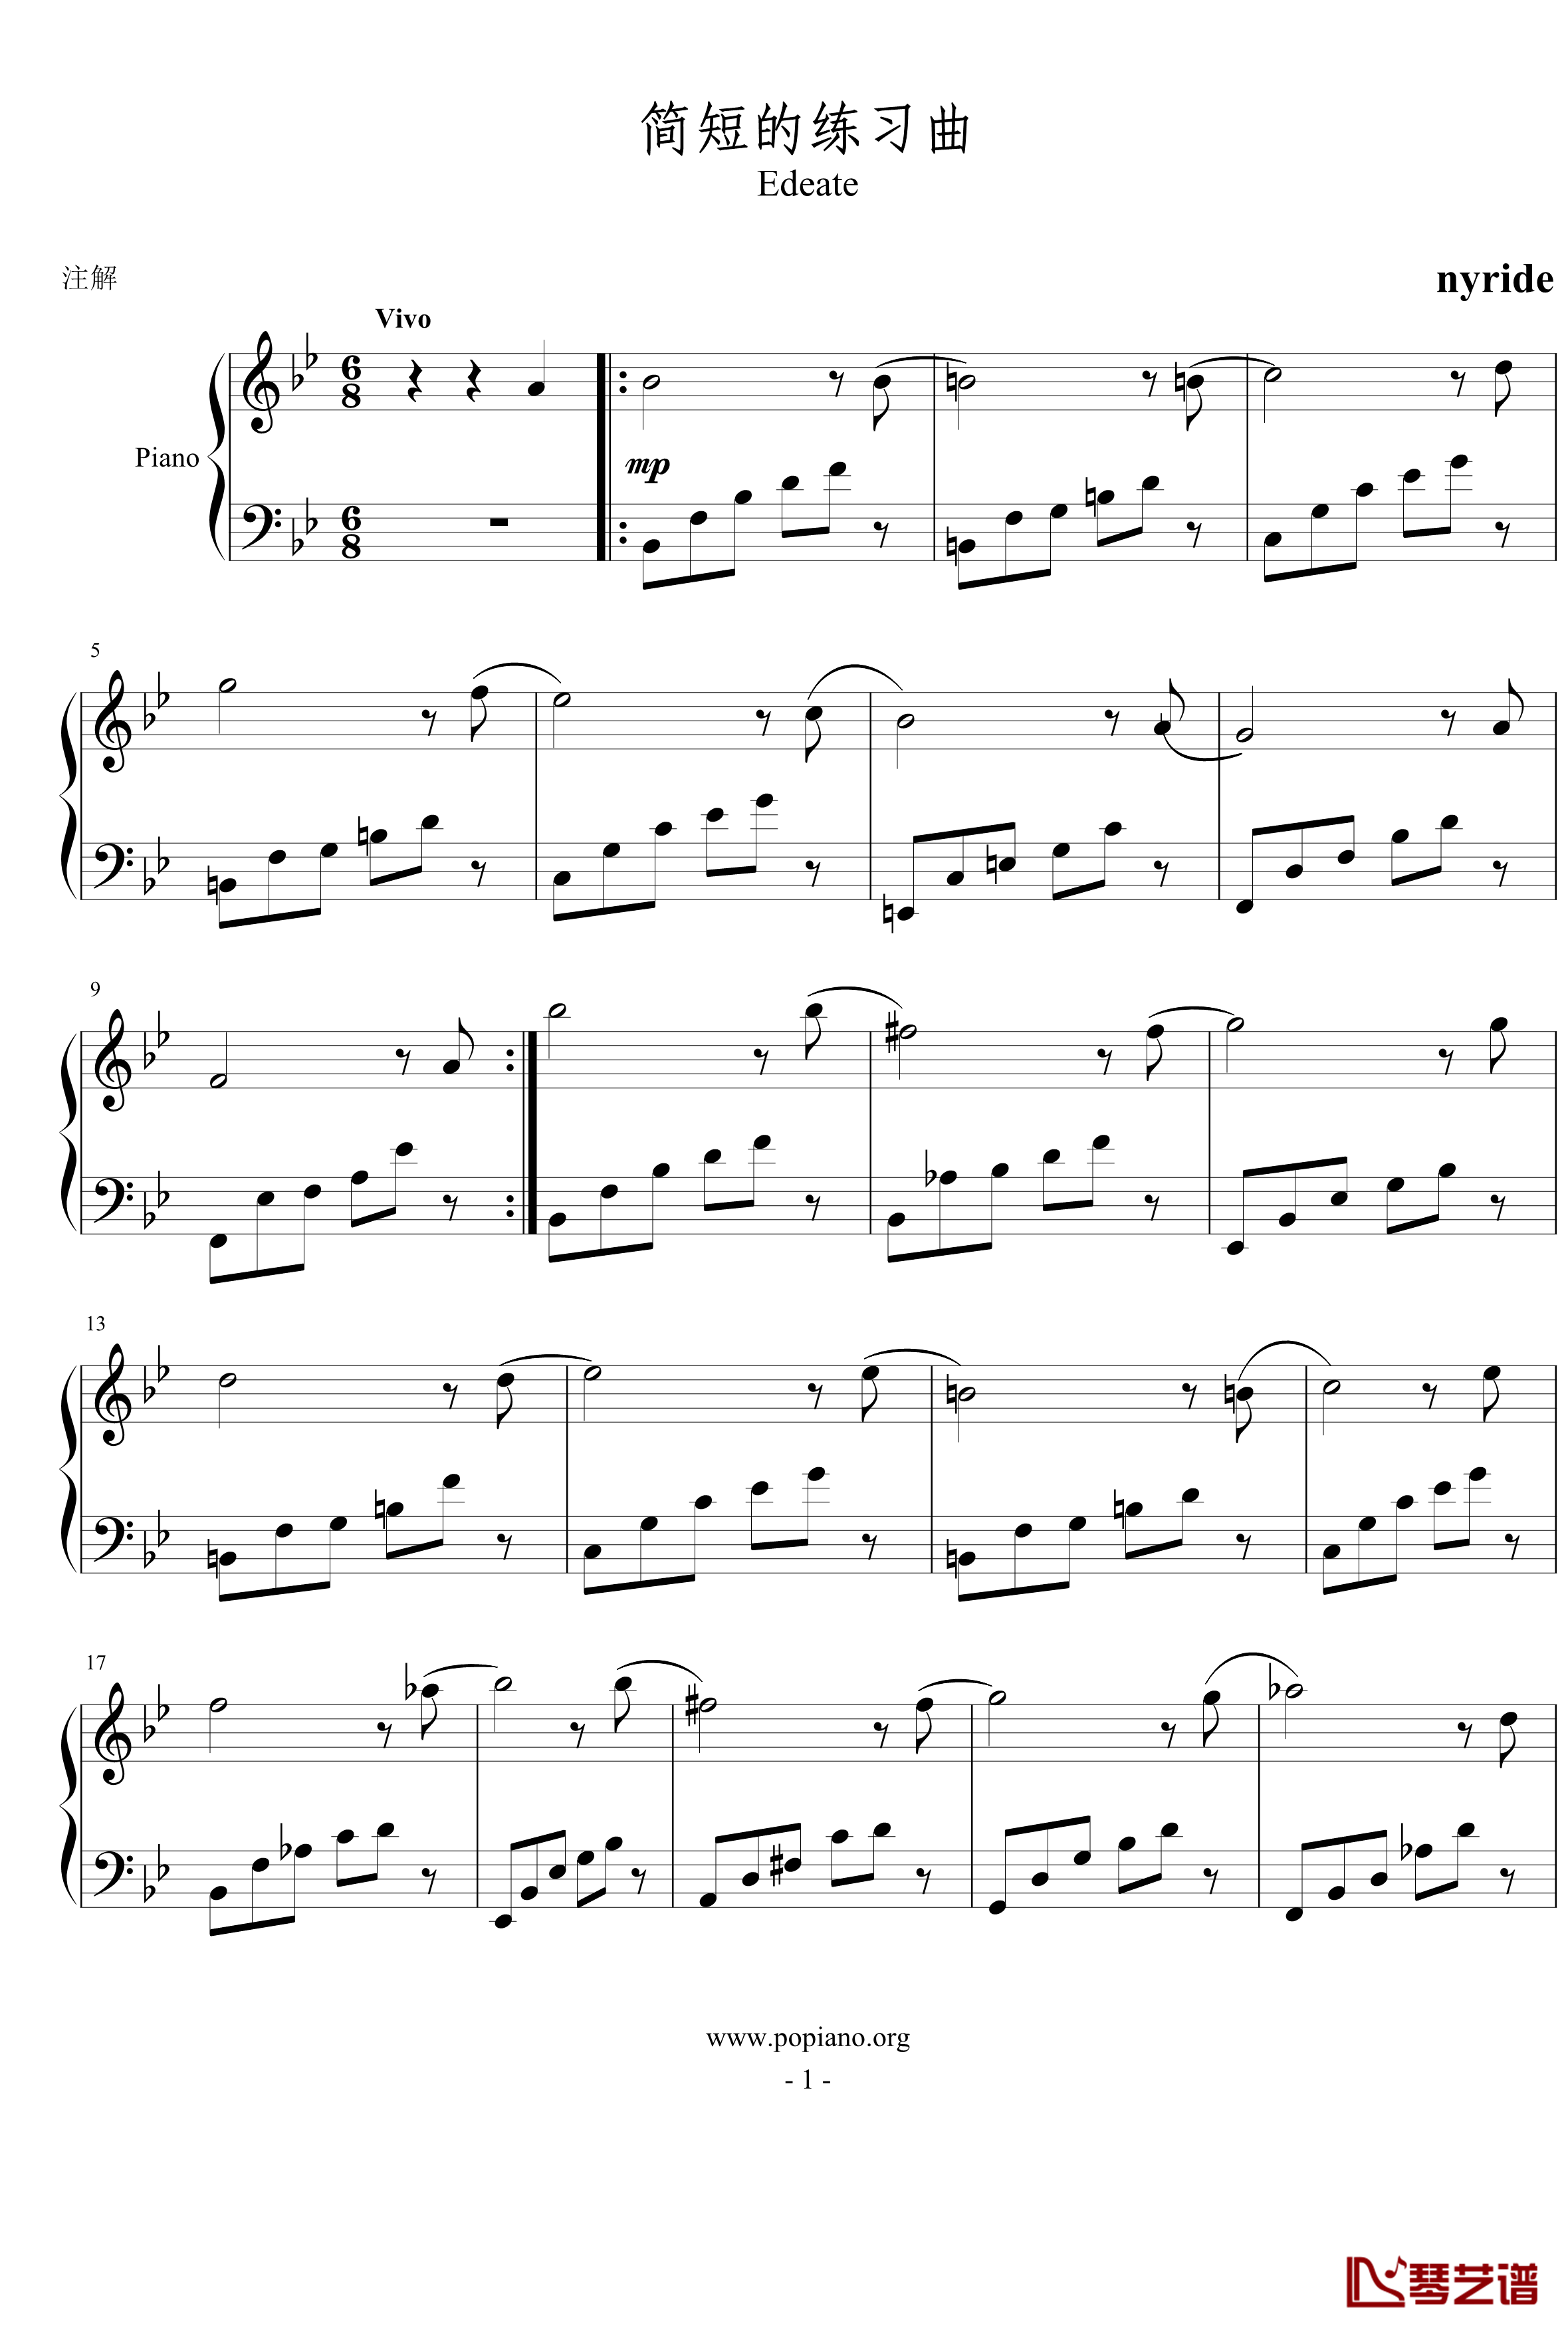 简短的练习曲钢琴谱-nyride